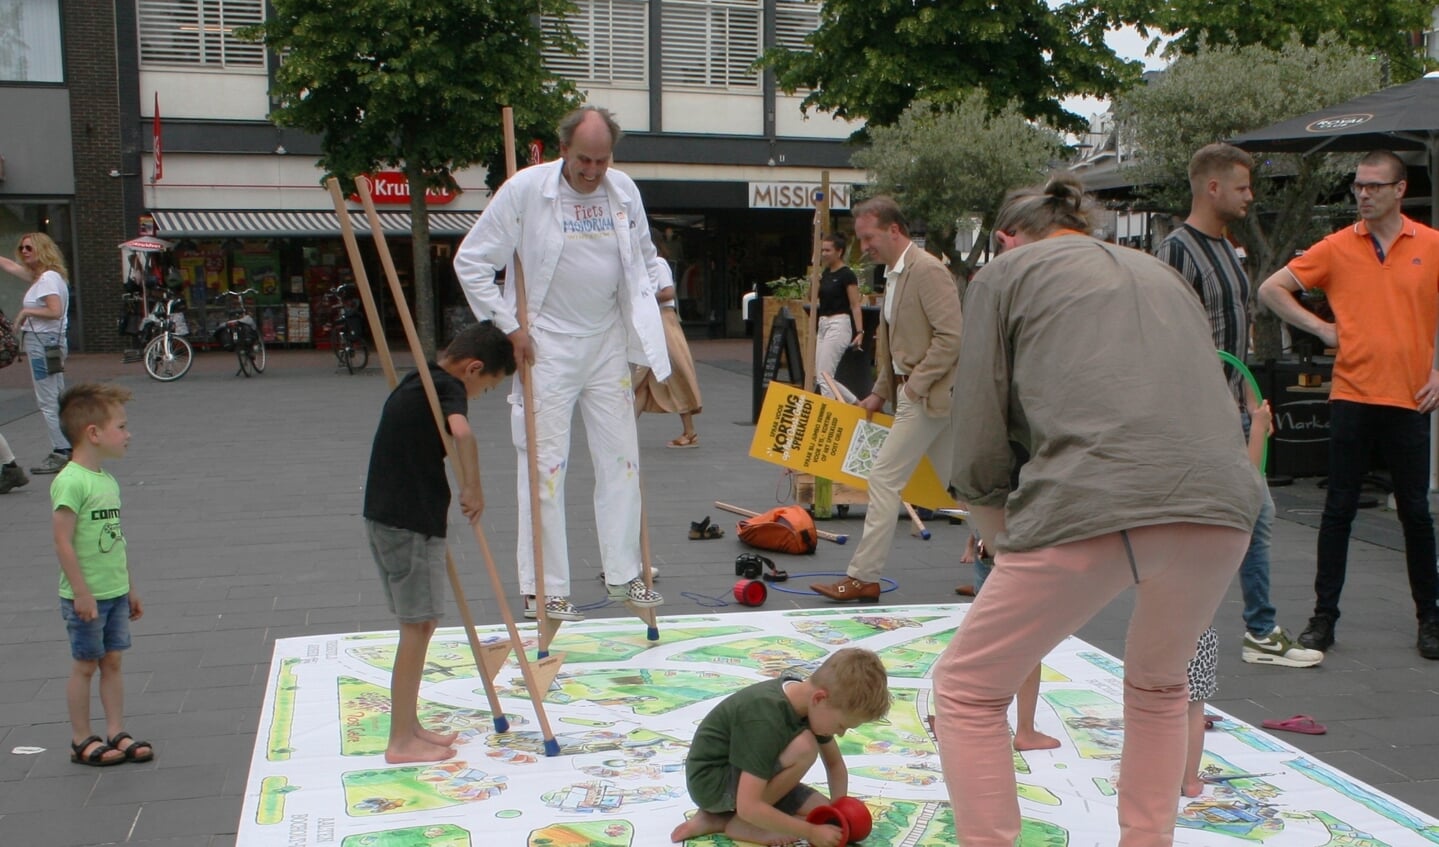 Kunstenaar Vic Hulshof (in het wit) op de stelten over het speelkleed. Foto: Dinès Quist